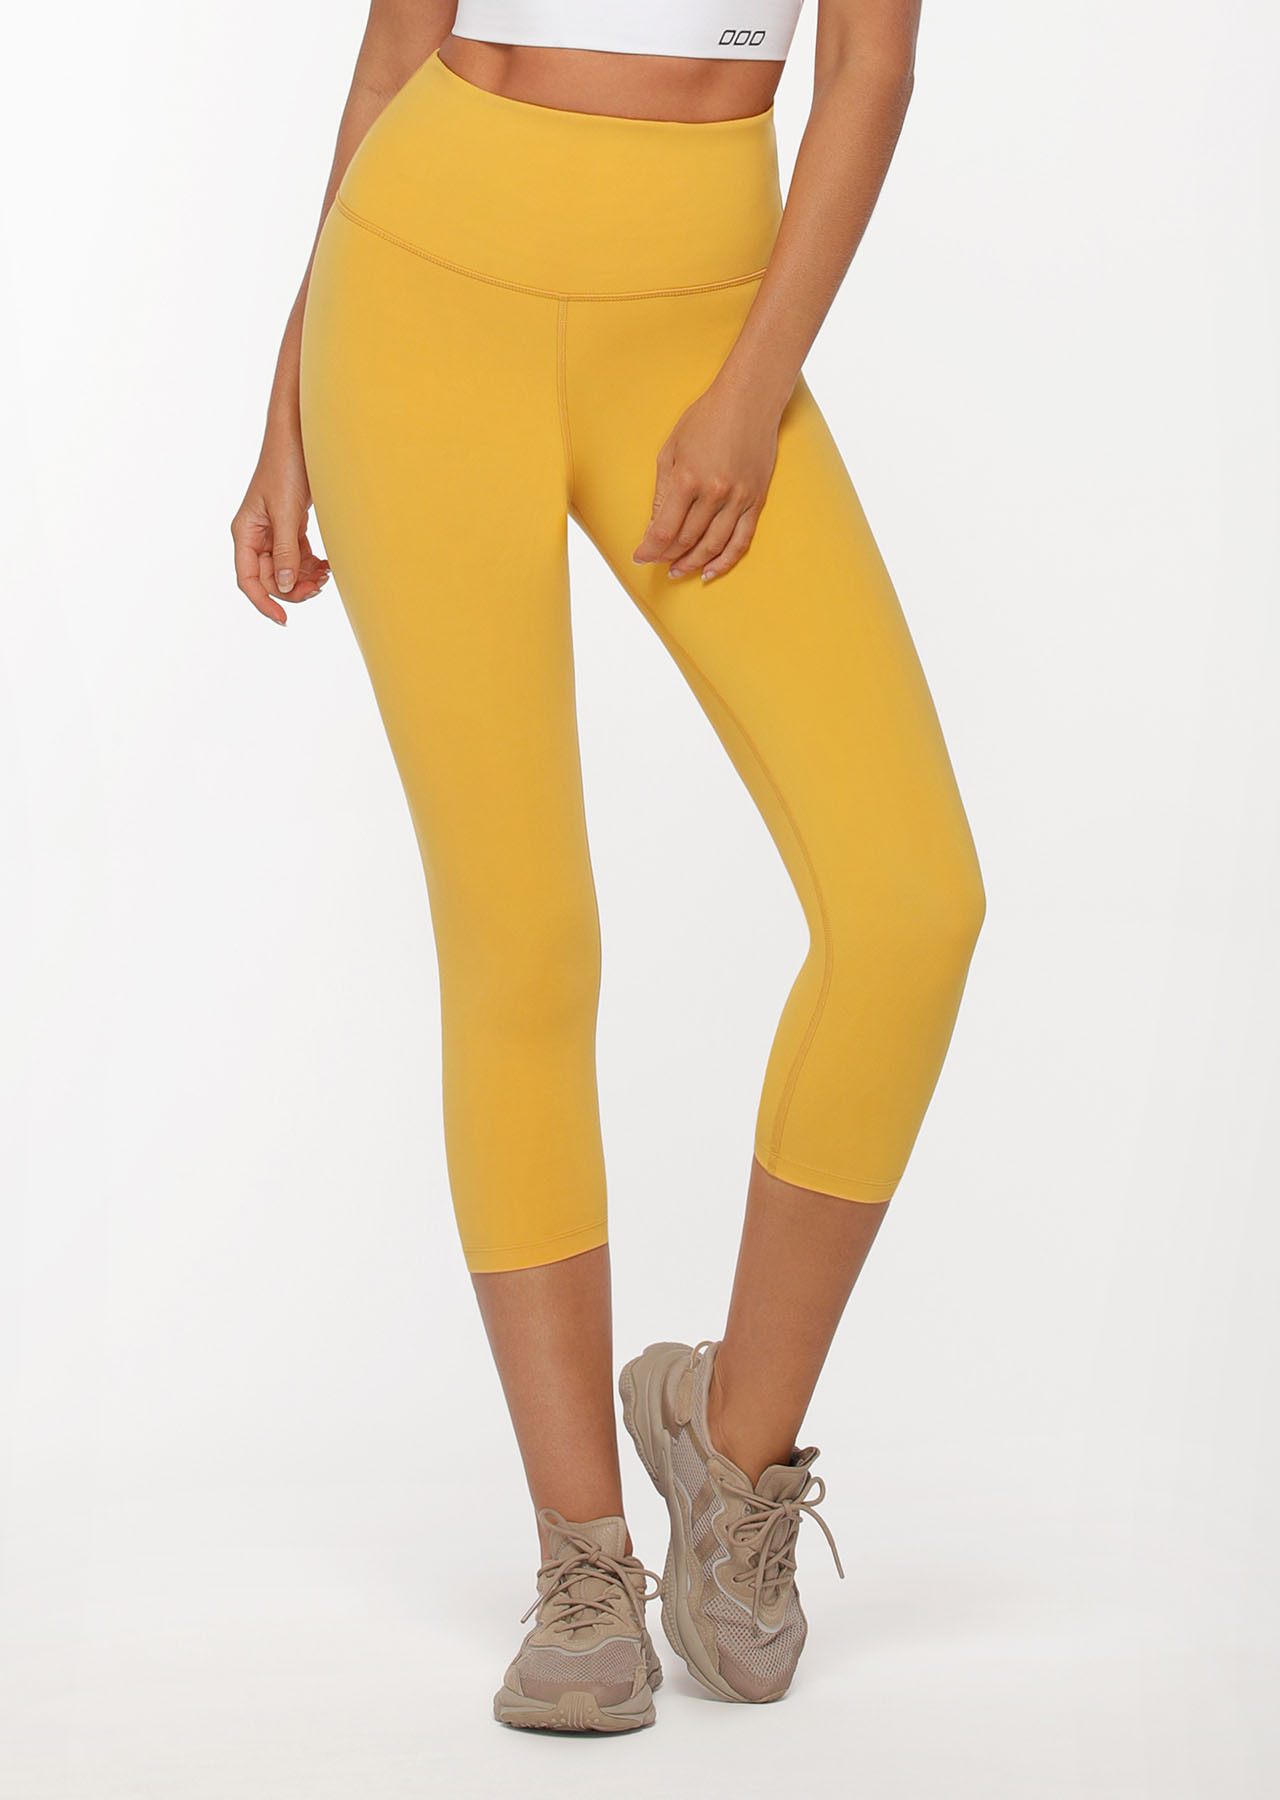 Lotus 7/8 Leggings | Yellow | 7/8 | Lorna Jane USA